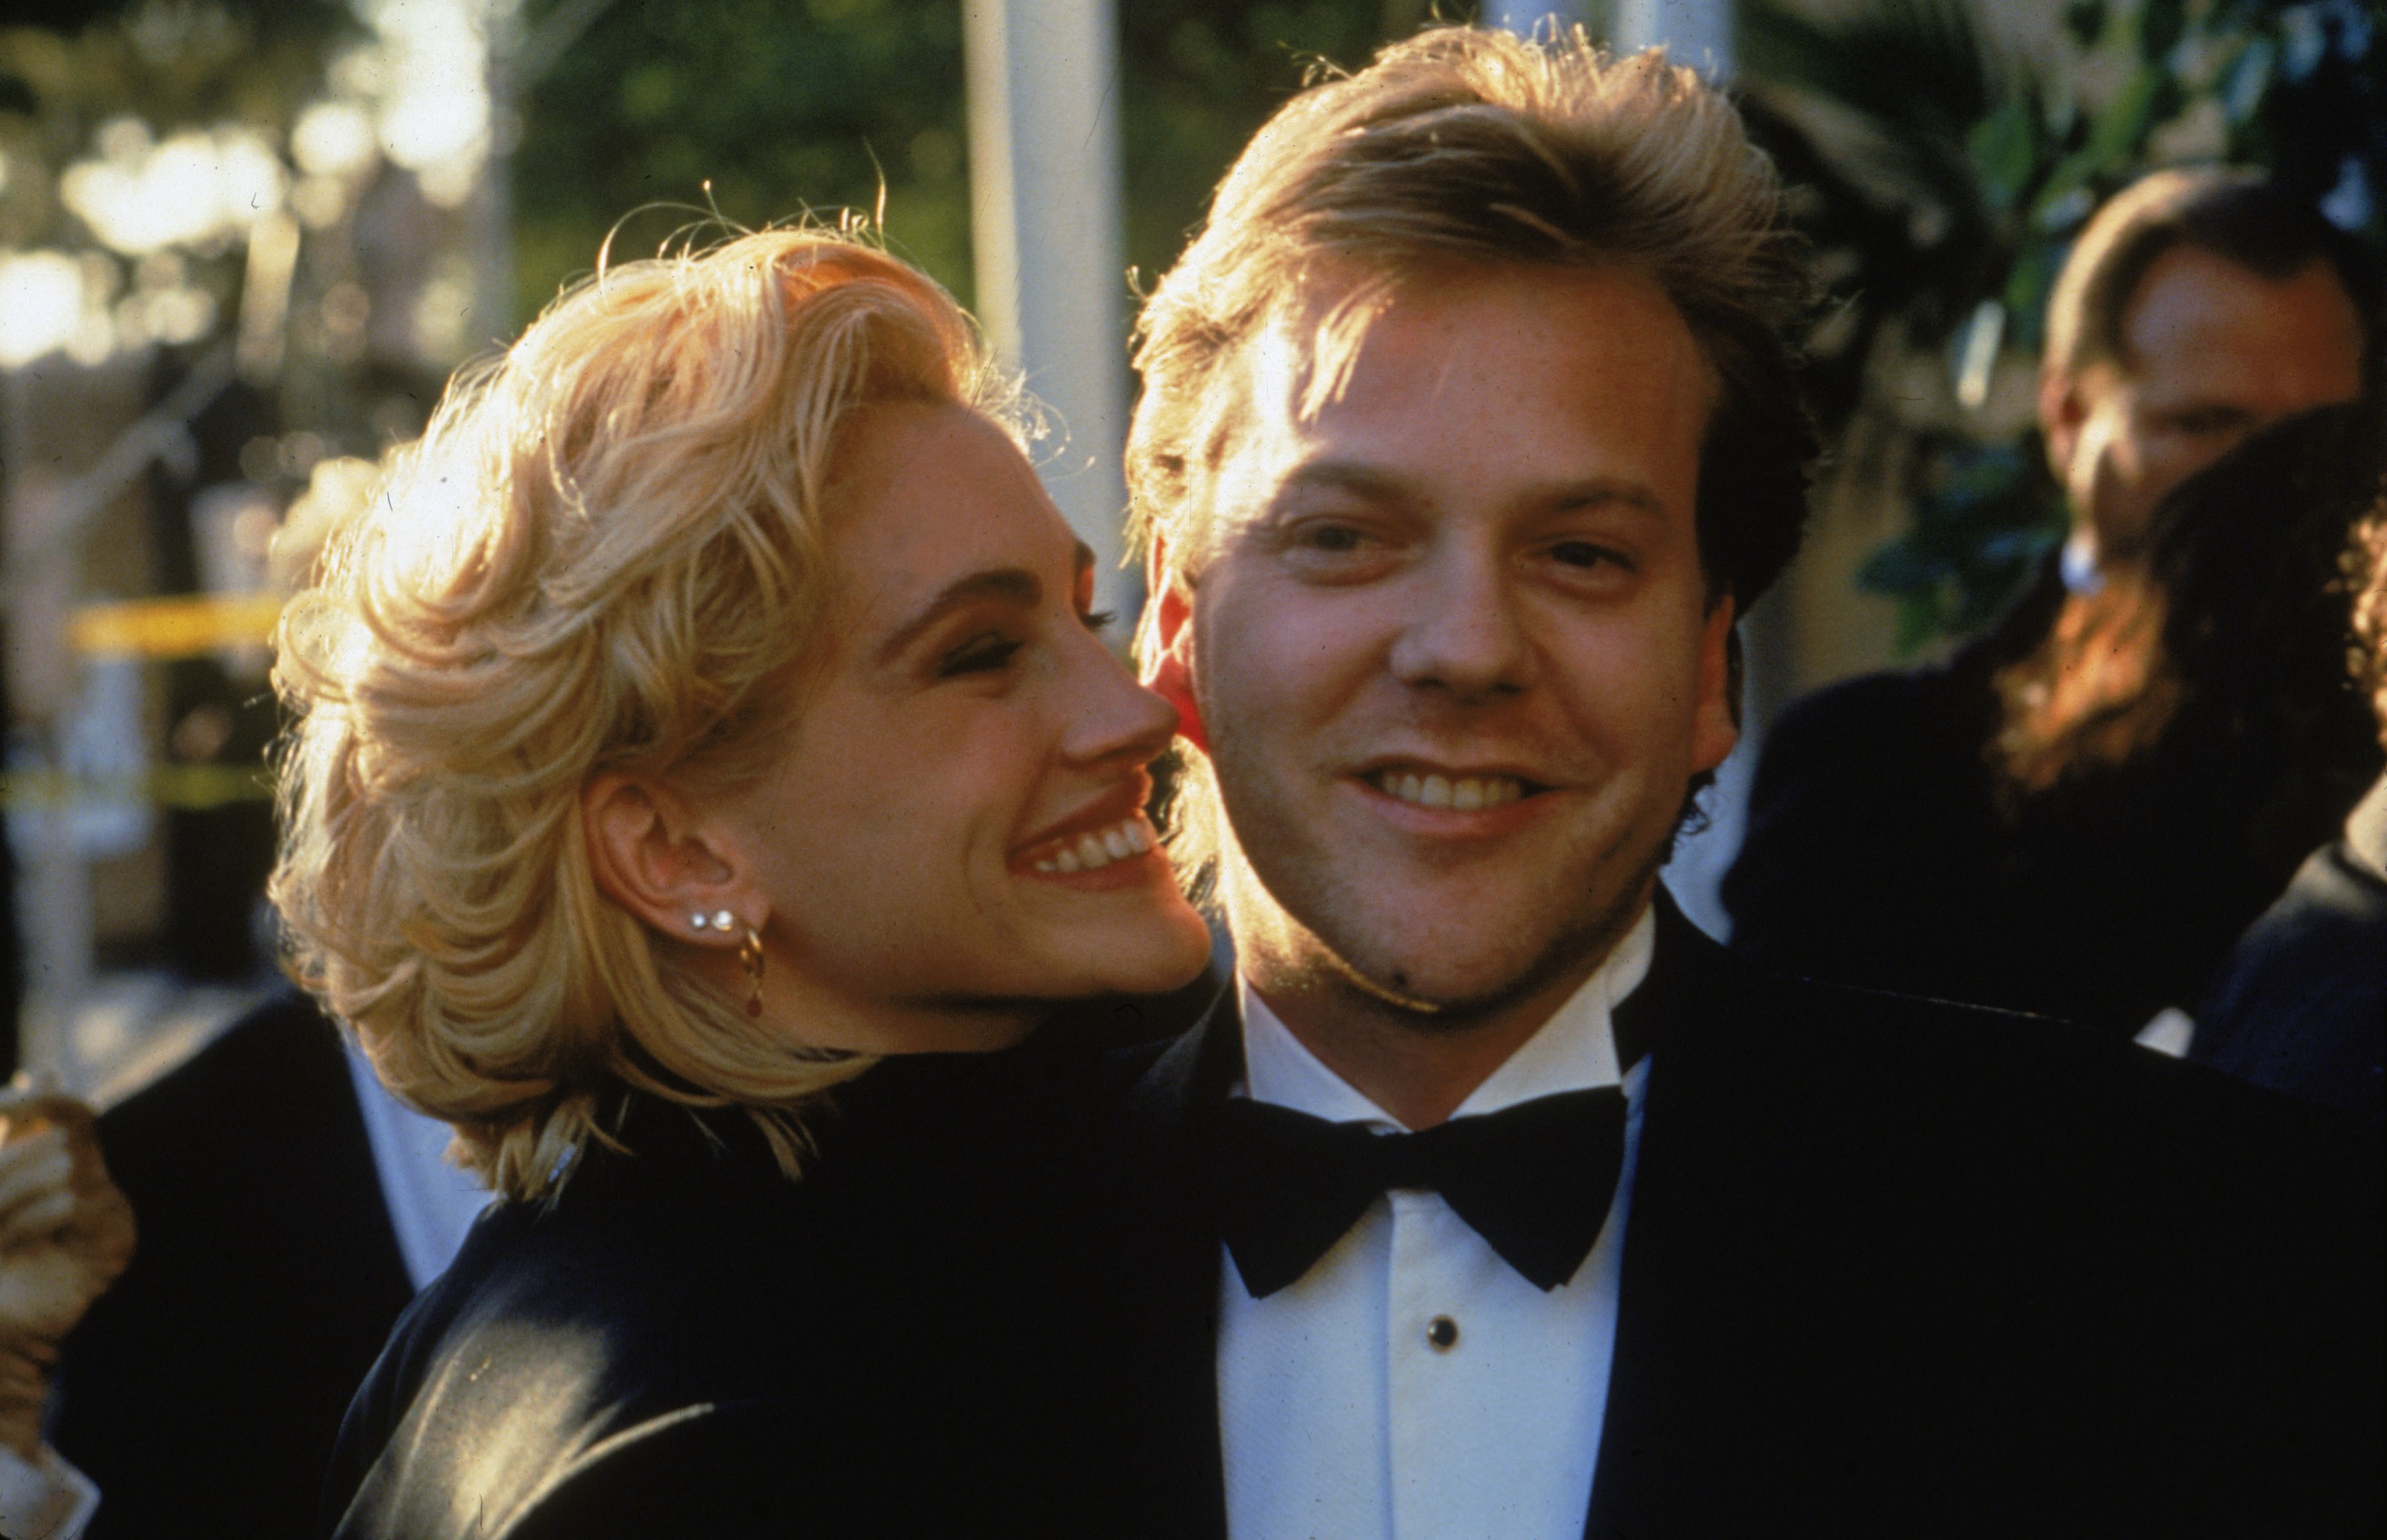 La actriz estadounidense Julia Roberts y su novio, el actor canadiense Kiefer Sutherland, llegan a la ceremonia de entrega de los Oscar, Los Ángeles, California, circa 1990 | Foto: Getty Images